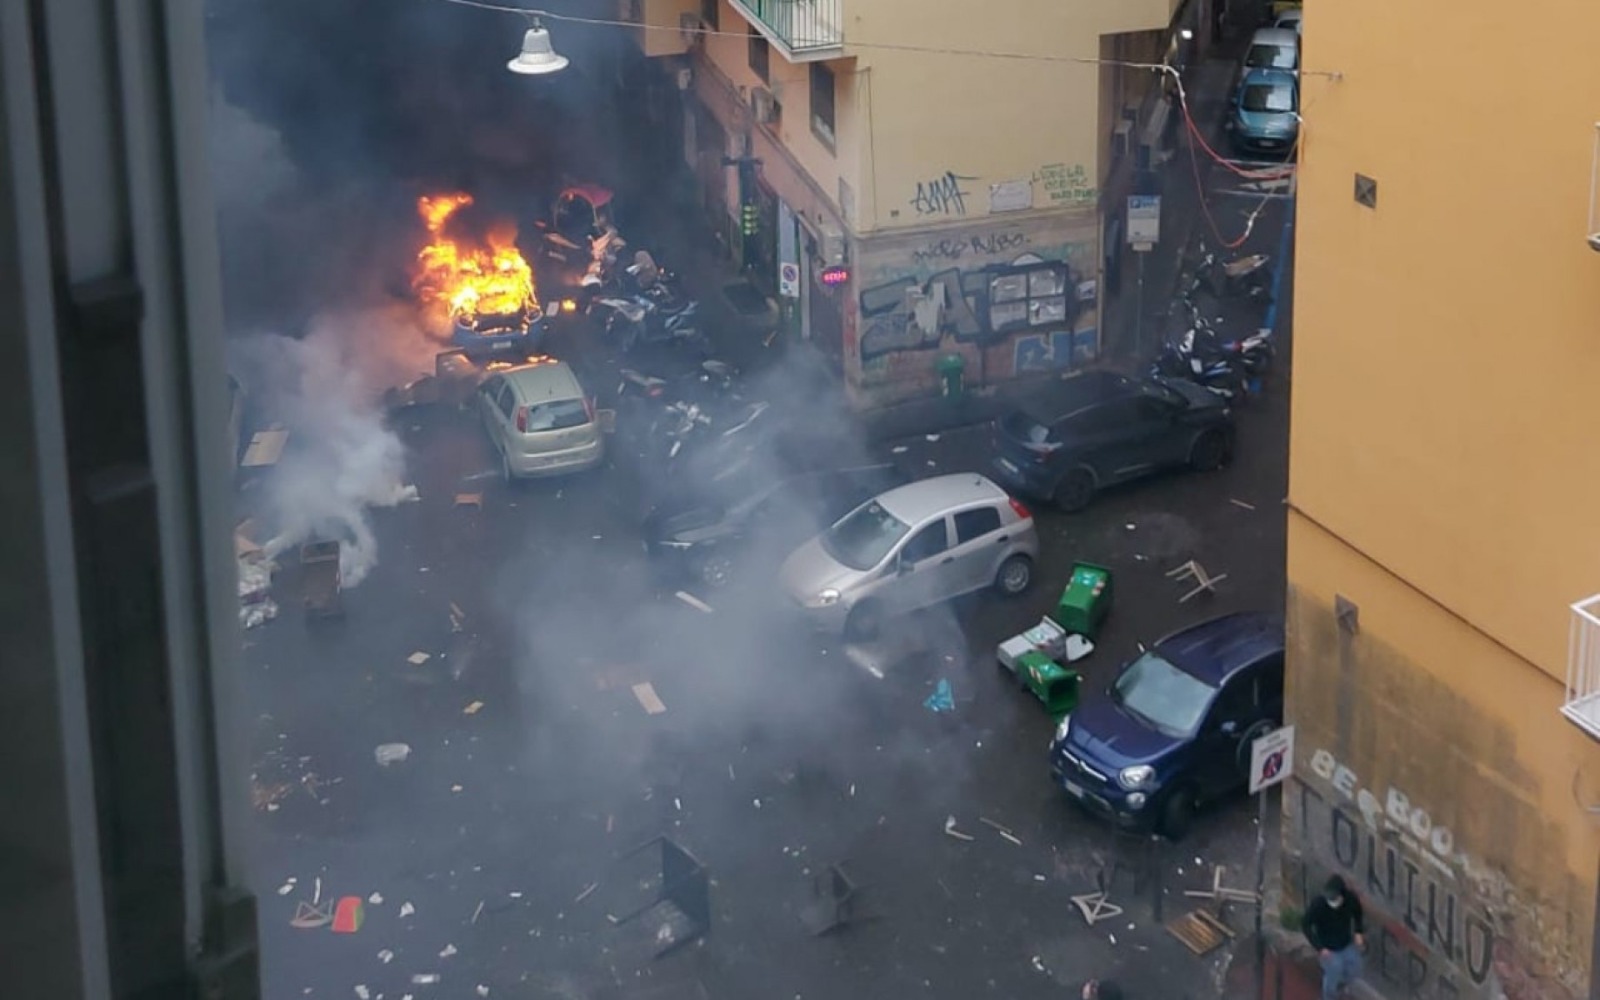 Naples – Francfort: De violents affrontements éclatent entre supporters, des voitures incendiées (VIDEO)